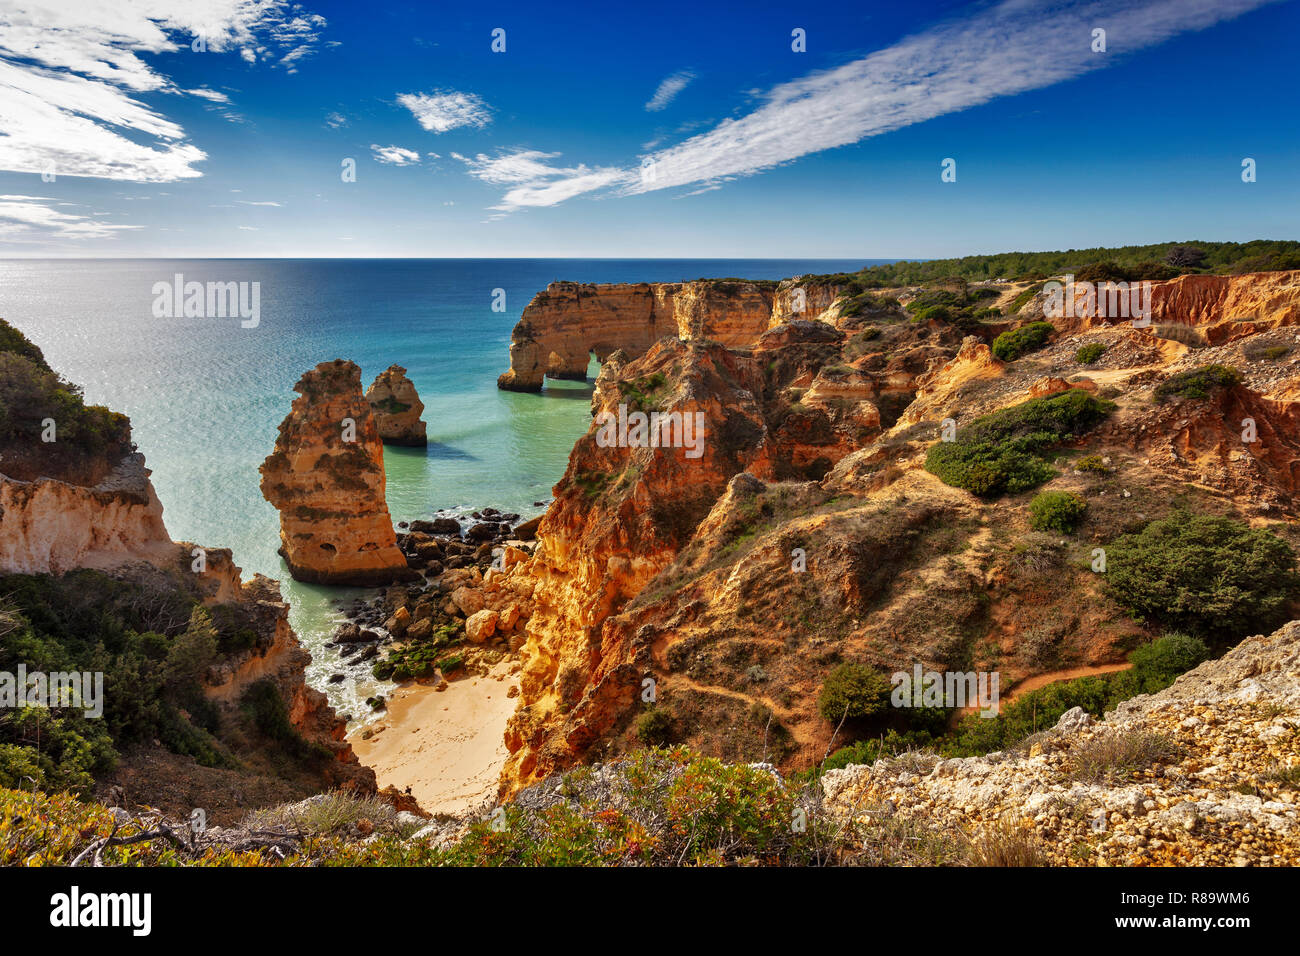 Beach and coloured rocks, Praia da Marinha, Carvoeiro, Algarve, Portugal Stock Photo